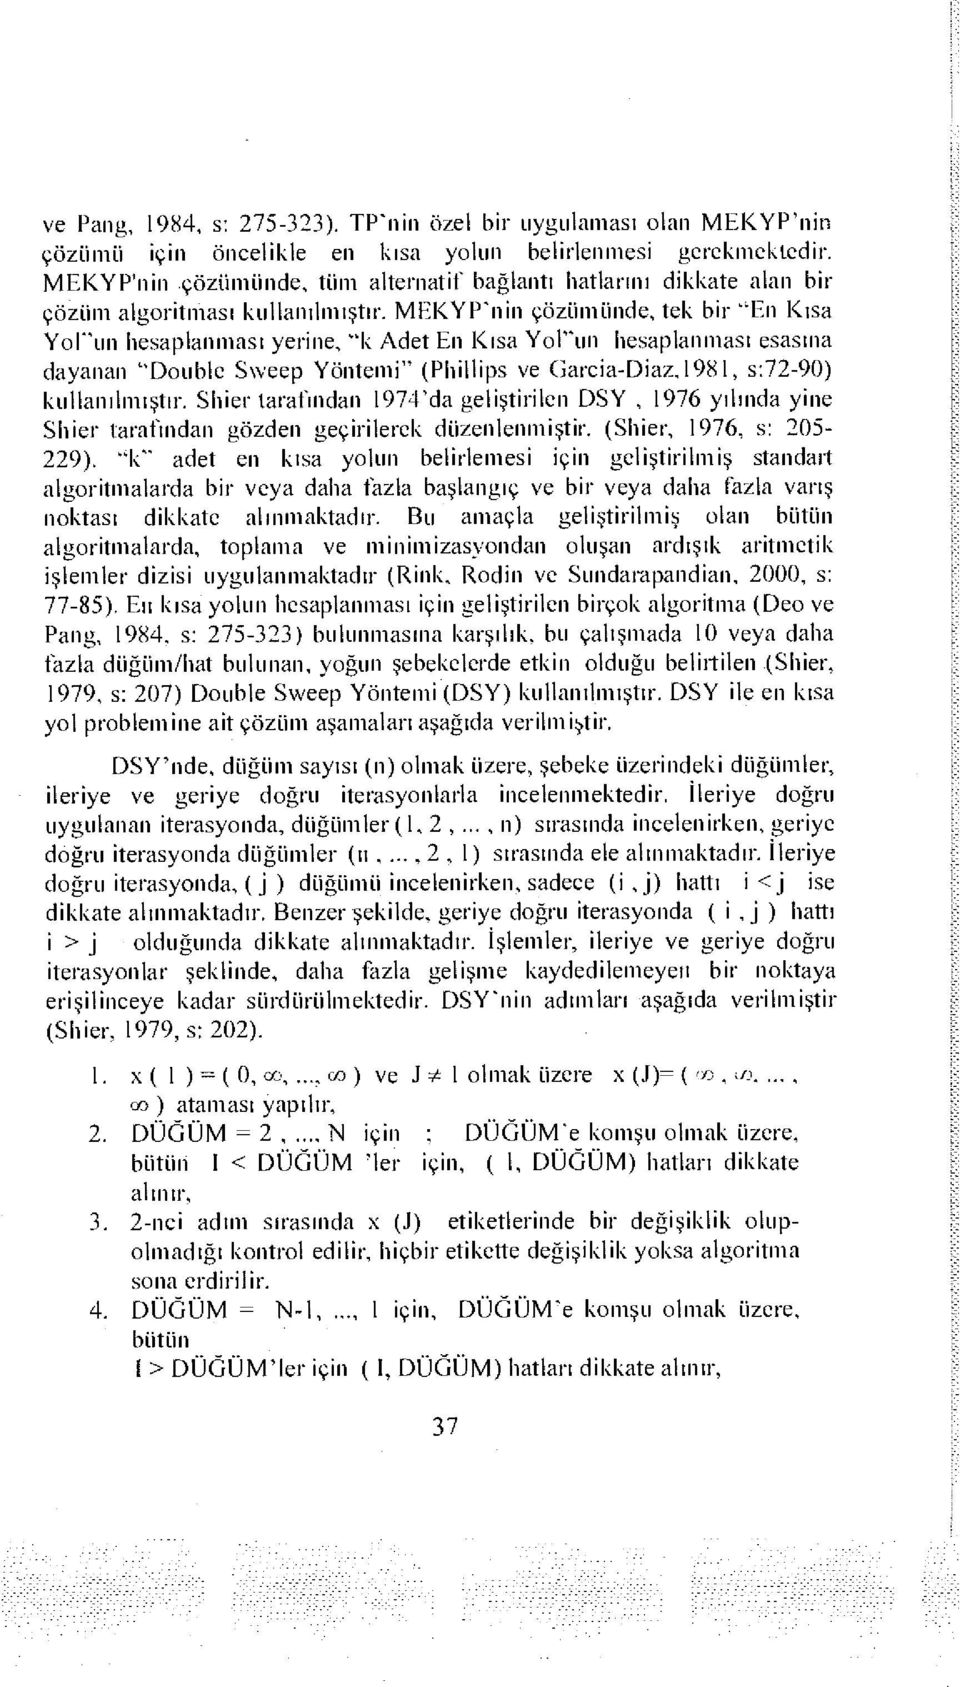 MEKYP'nin çözümünde, tek bir "En Kısa Yorun hesaplanması yerine, "k Adet En Kısa Yol"un hesaplanması esasına dayanan "Double Svveep Yöntemi" (Phillips ve Garcia-Diaz.1981, s:72-90) kullanılmıştır.